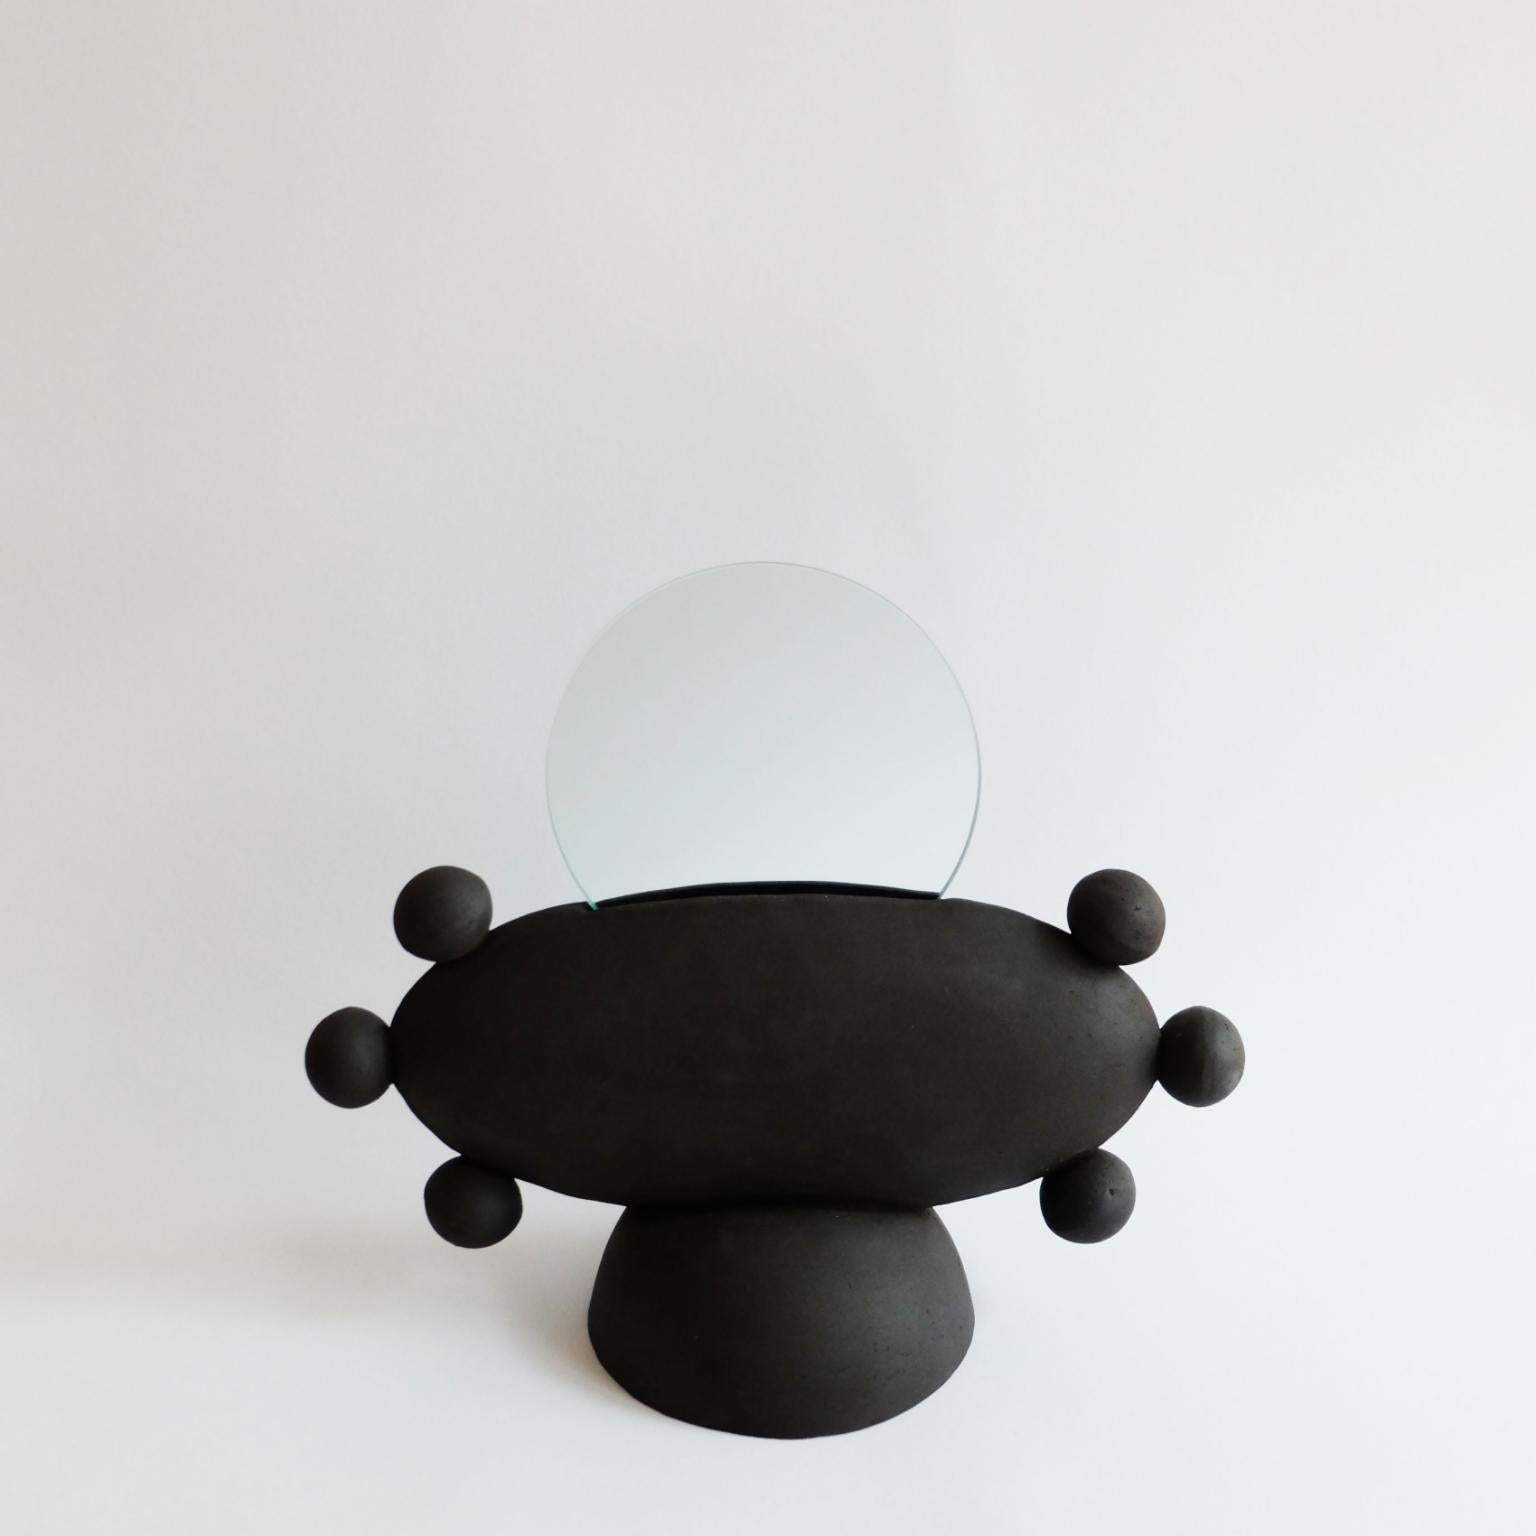 Miroir ovni unique de Ia Kutateladze
Dimensions : L 33 x H 26 cm
Matériaux : Argile

UFO 02 est un miroir en céramique fabriqué à la main. Objet décoratif fonctionnel ludique et audacieux, pour différents types d'intérieurs.

IAAI / Ia Kutateladze